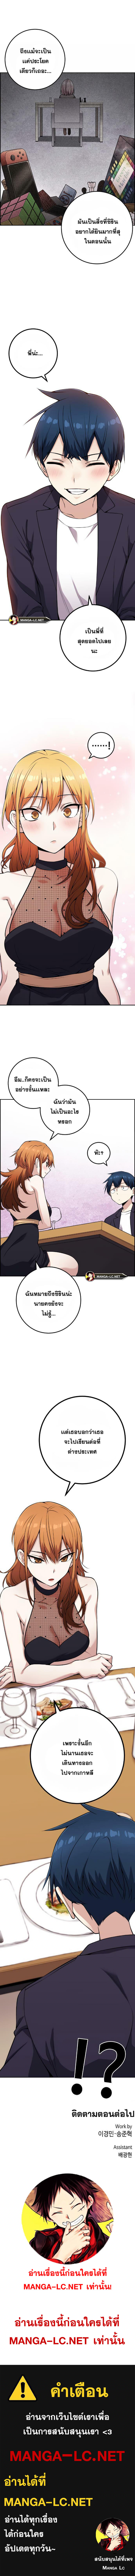 Webtoon Character Na Kang Lim ตอนที่ 58 (8)